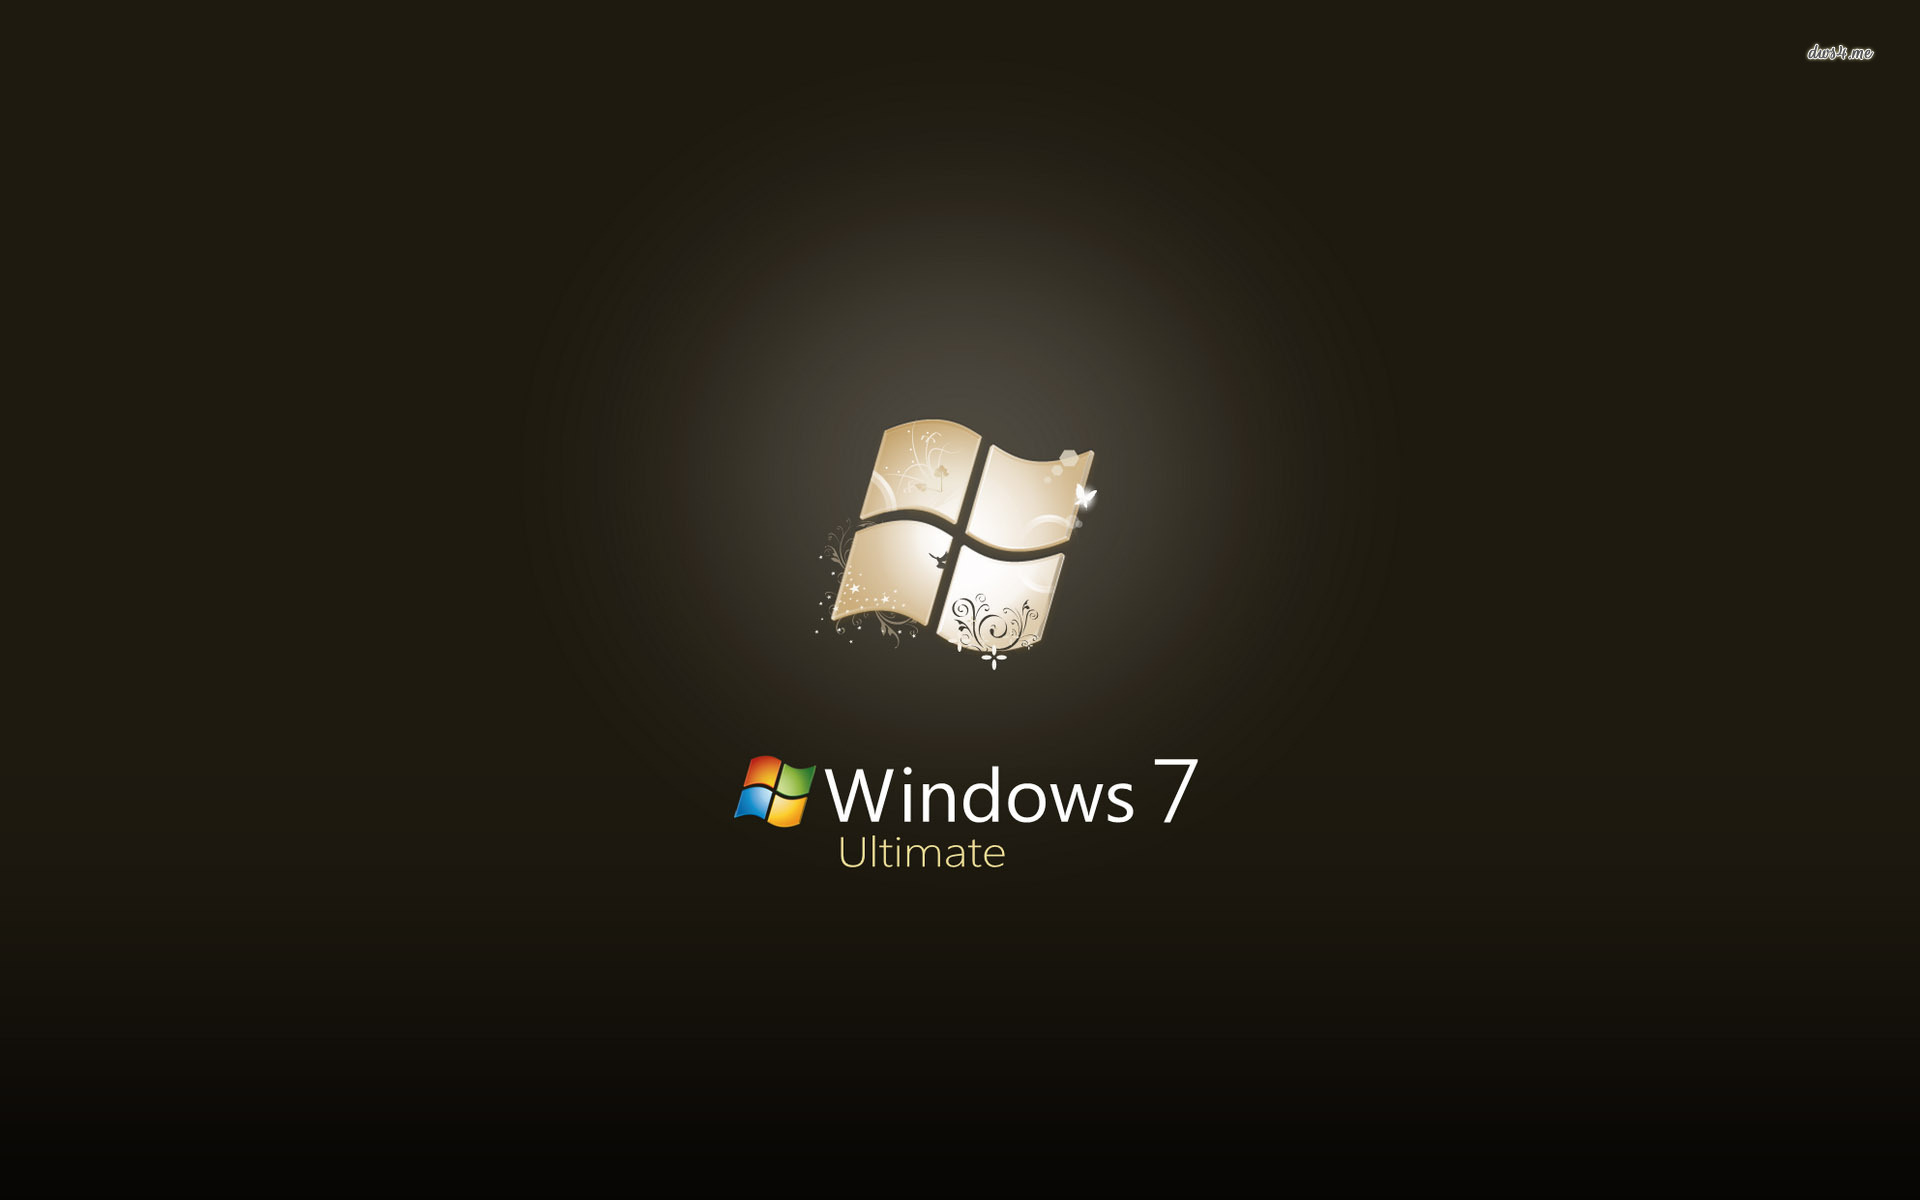 Windows 7 Ultimate Wallpaper 1280x800 - WallpaperSafari